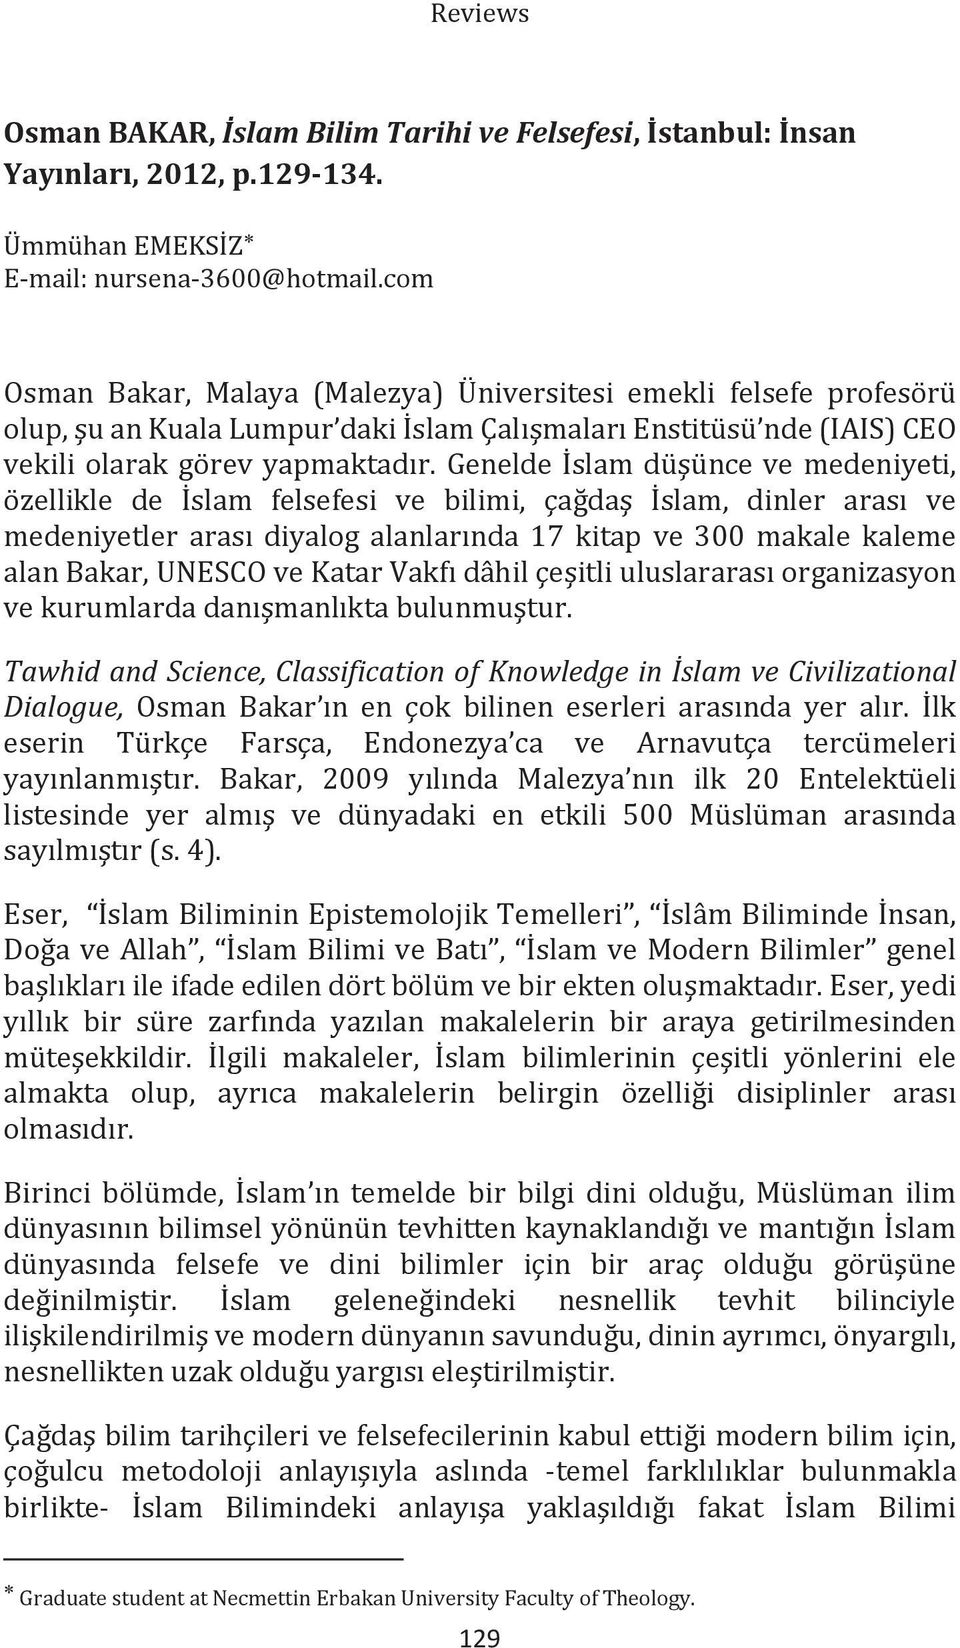 Genelde İslam düşünce ve medeniyeti, özellikle de İslam felsefesi ve bilimi, çağdaş İslam, dinler arası ve medeniyetler arası diyalog alanlarında 17 kitap ve 300 makale kaleme alan Bakar, UNESCO ve